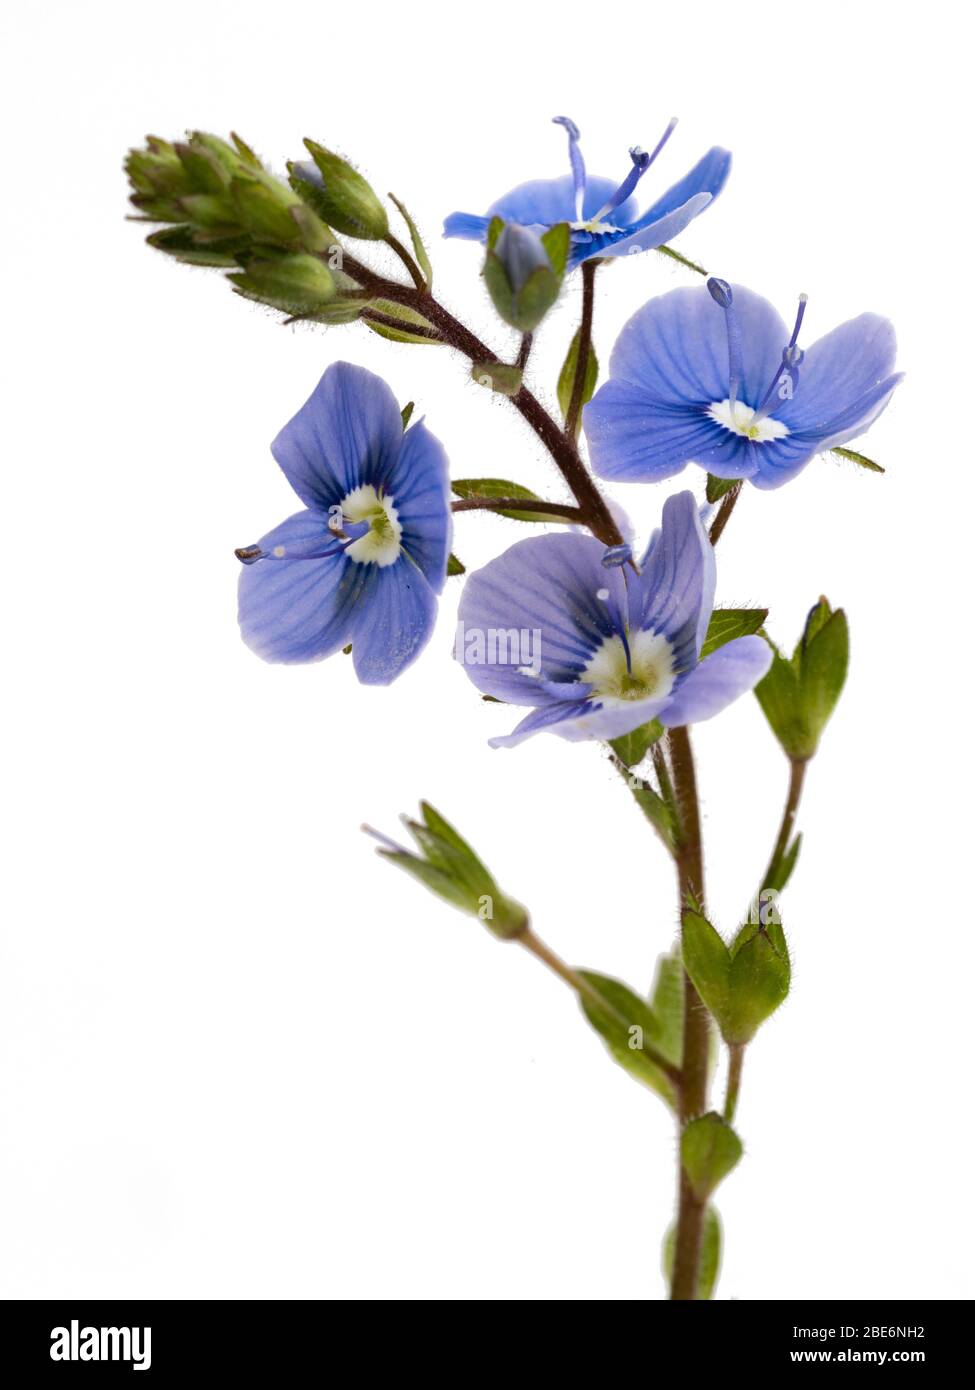 Tige et petites fleurs bleues de la fleur sauvage britannique, germander speedwell, Veronica chamaedrys, sur fond blanc Banque D'Images